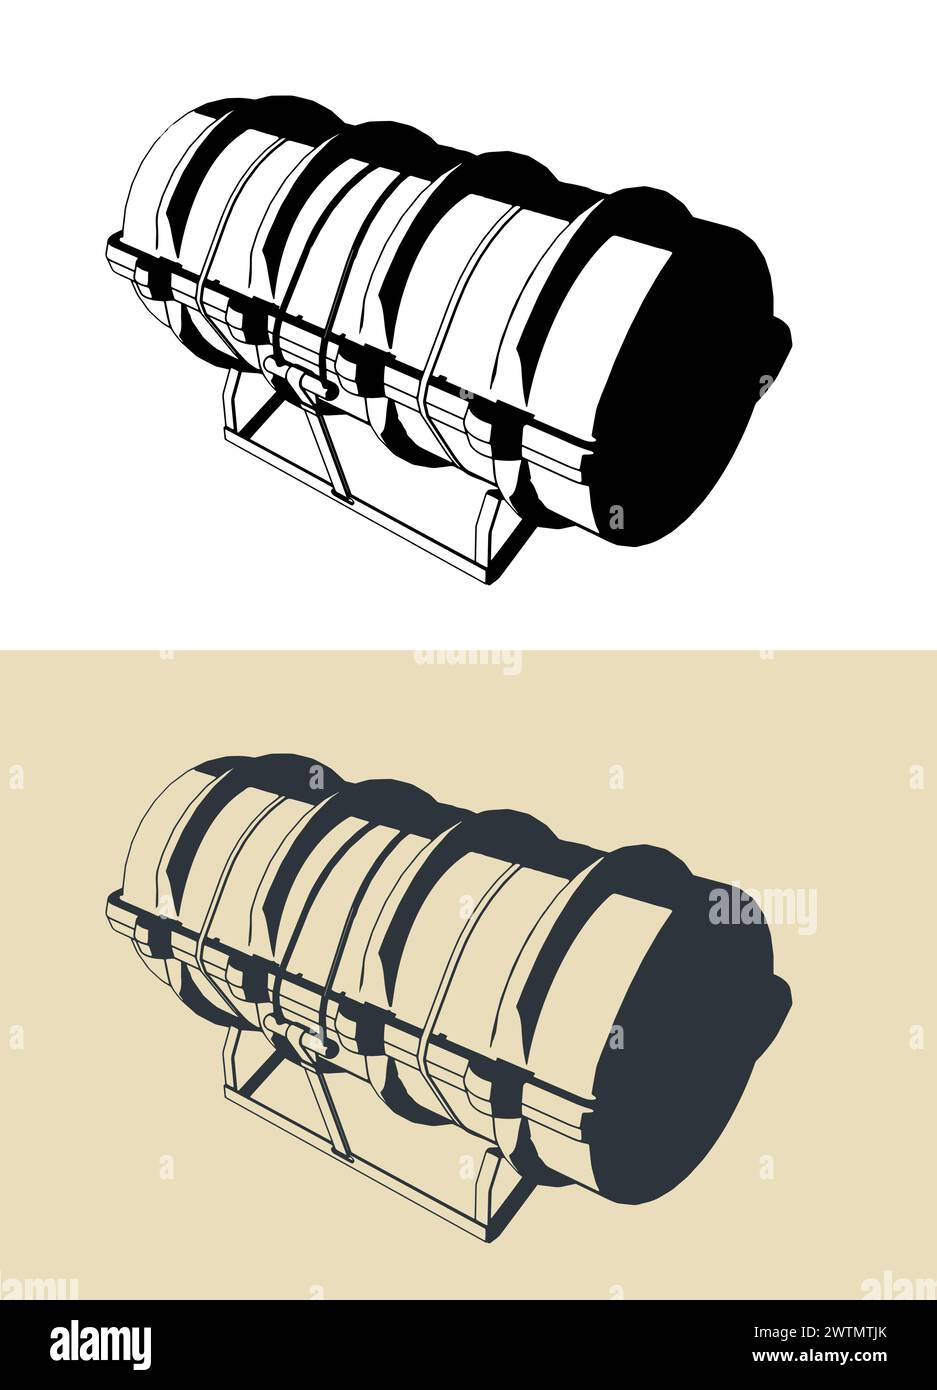 Stilisierte Vektor-Illustration eines Containers mit Rettungsfloß Stock Vektor